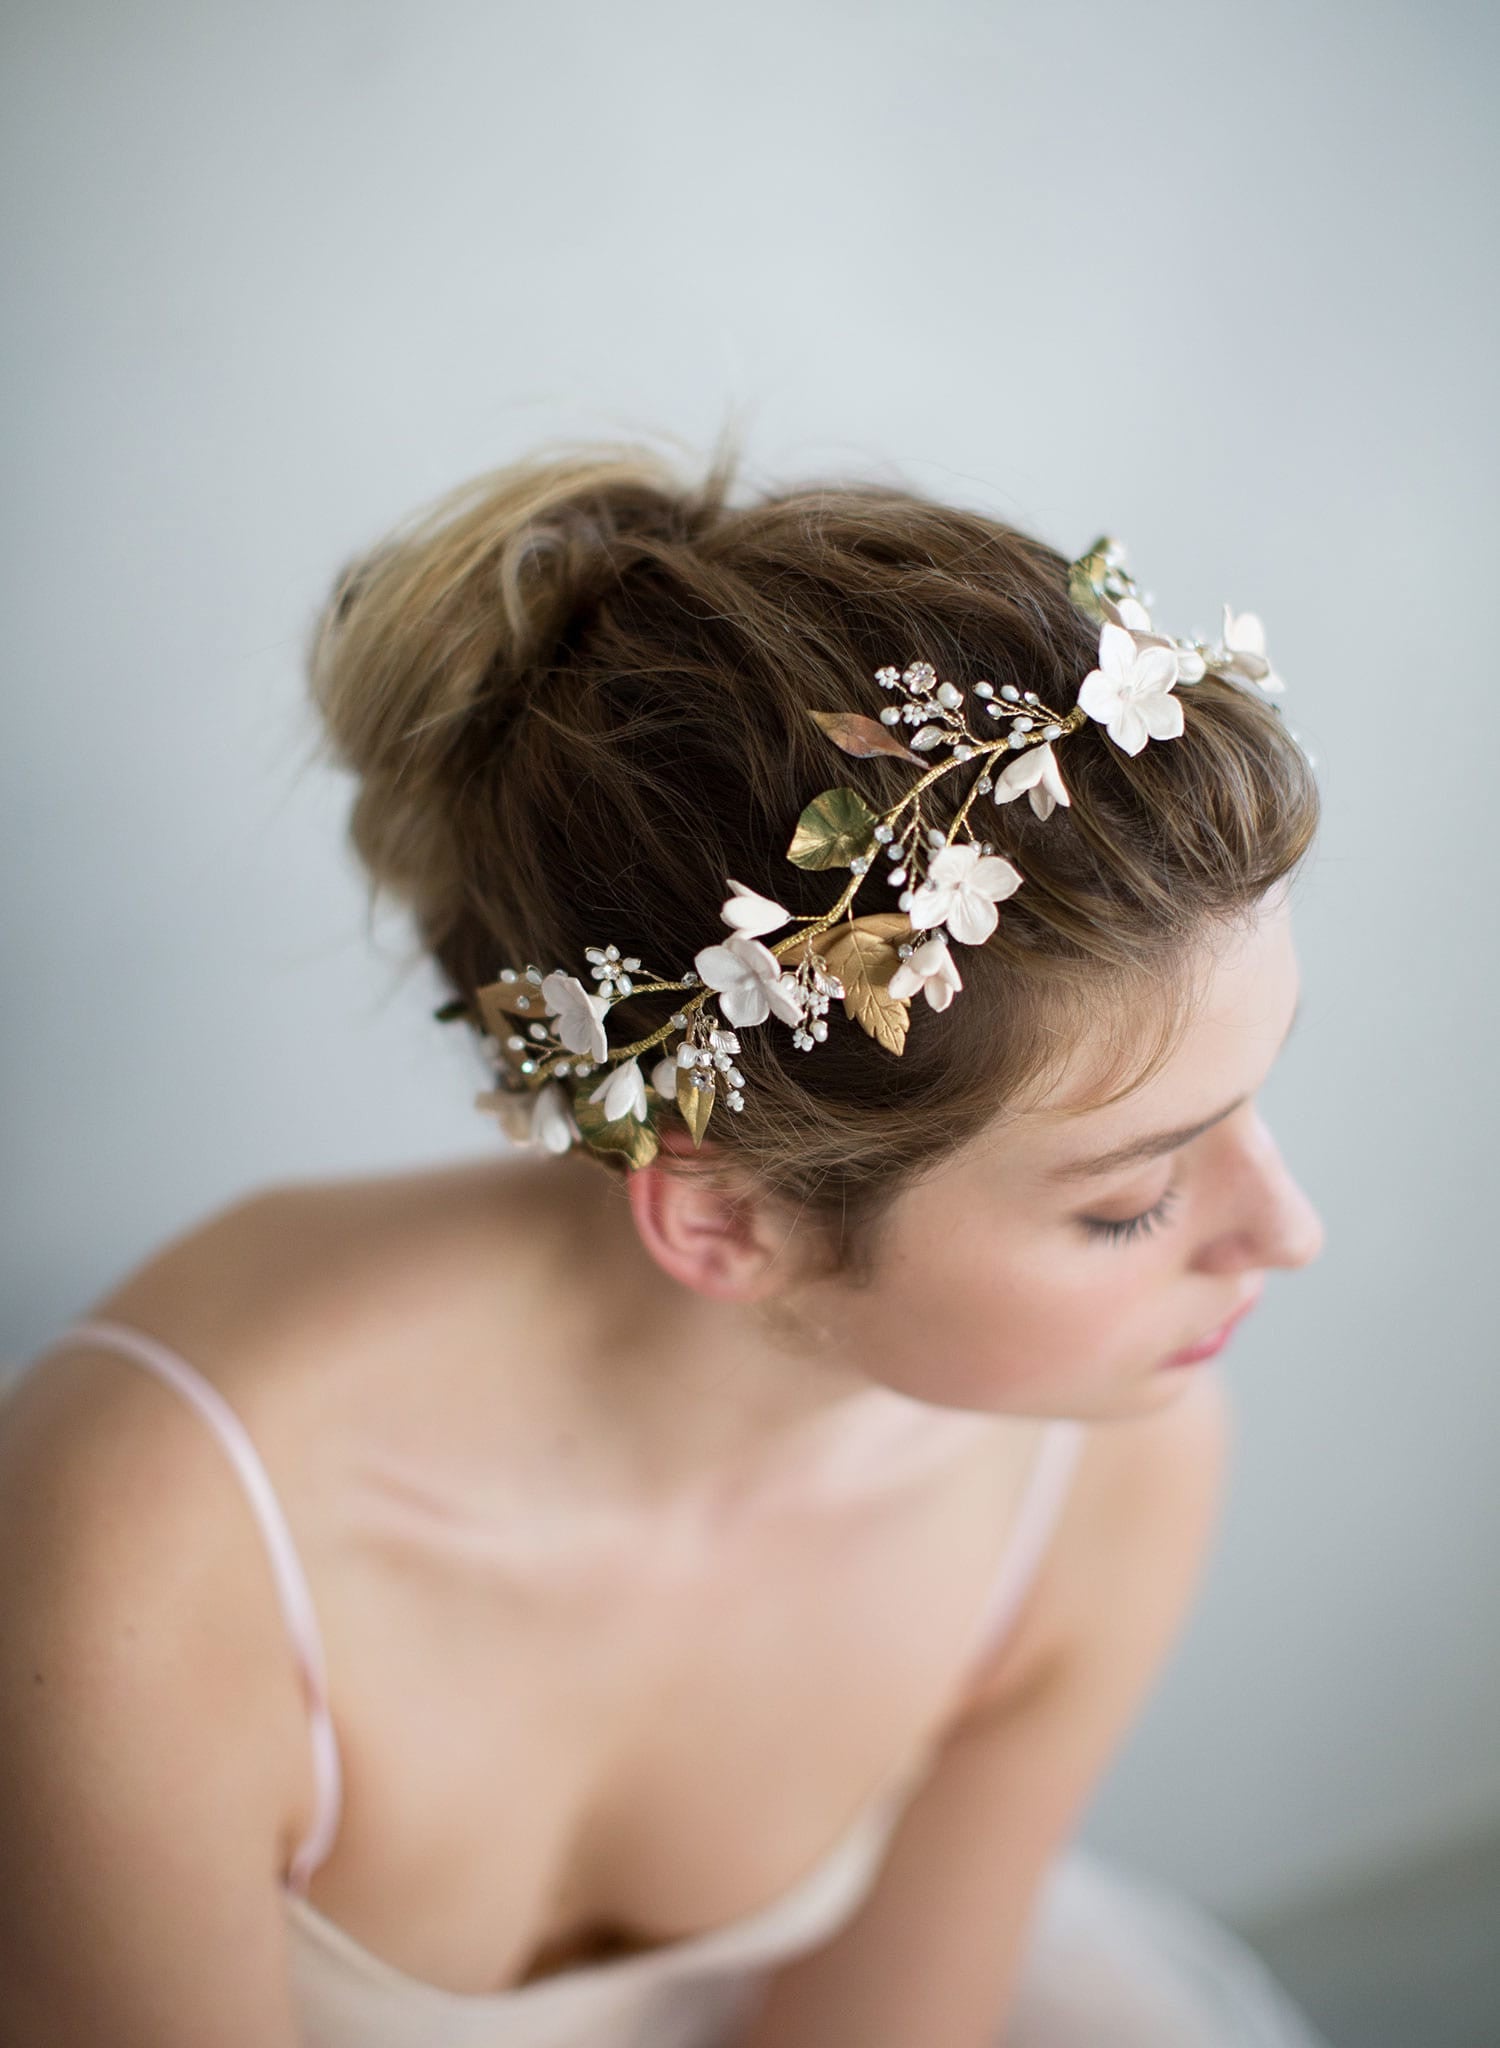 Bridal headpiece - Floral garden headpiece - Style #748 | Twigs & Honey